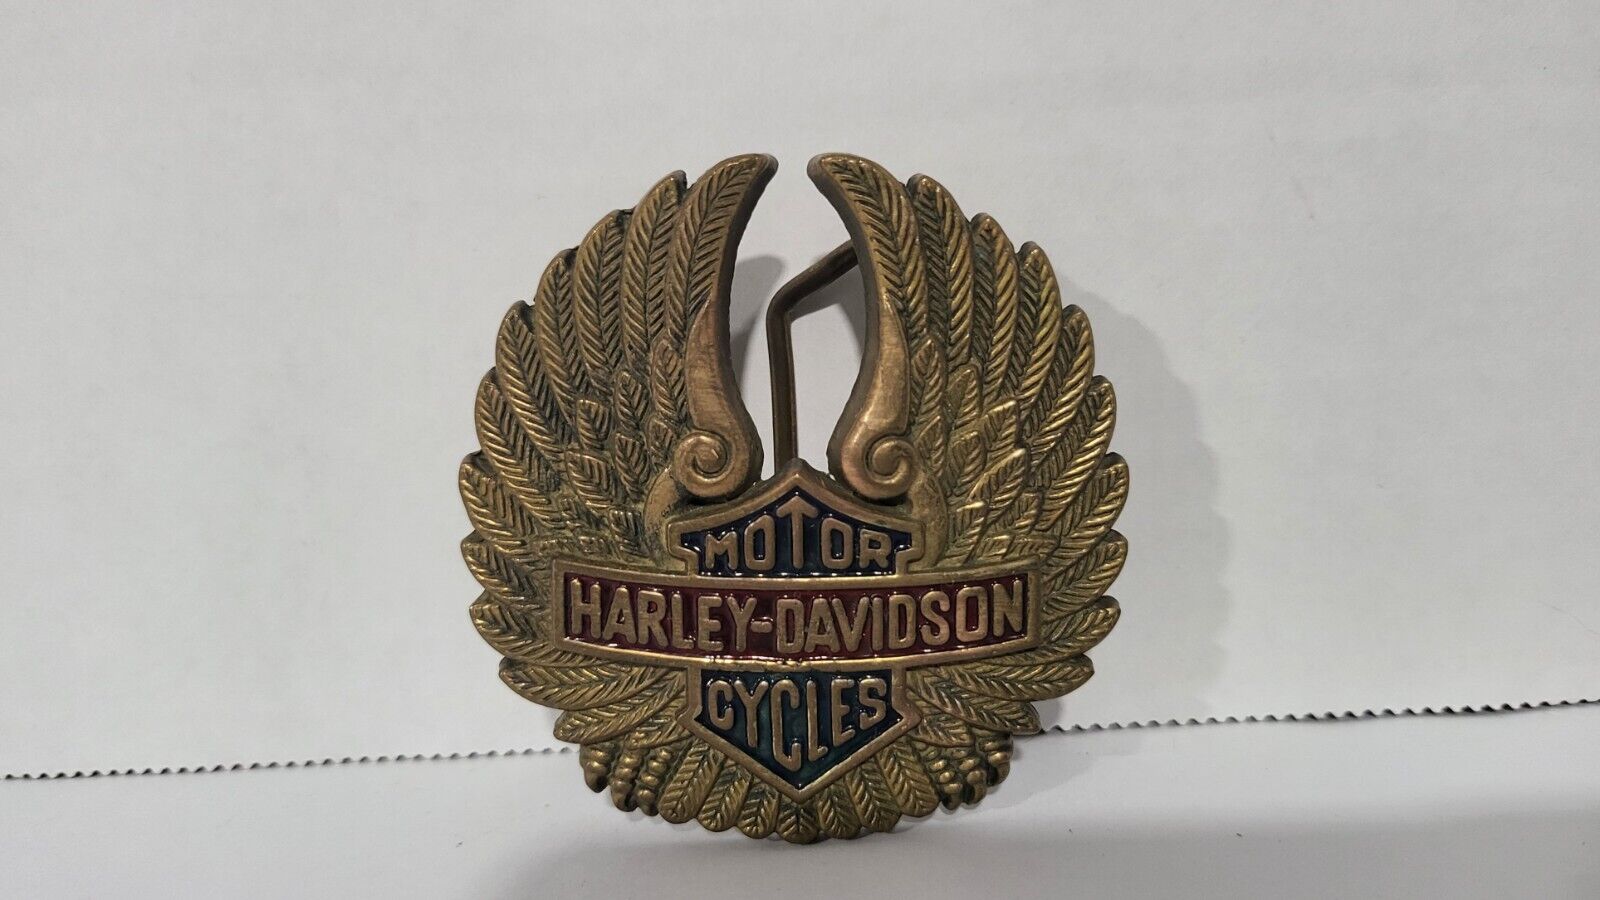 Exquisite Vintage Harley Davidson Emblem Raised Wings Belt Buckle, Solid Brass